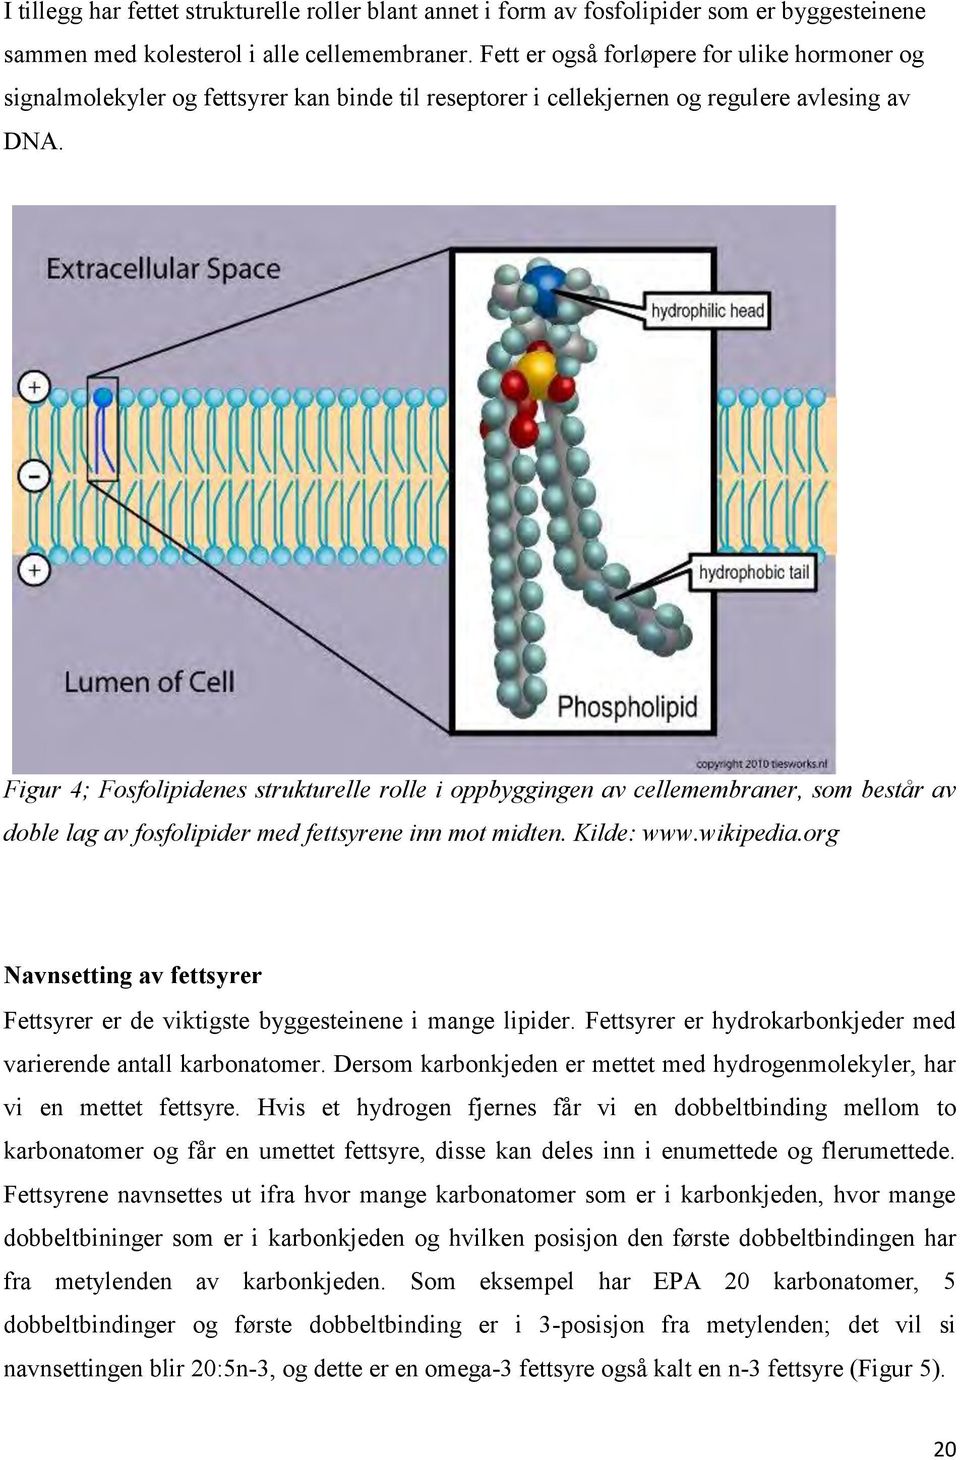 Figur 4; Fosfolipidenes strukturelle rolle i oppbyggingen av cellemembraner, som består av doble lag av fosfolipider med fettsyrene inn mot midten. Kilde: www.wikipedia.